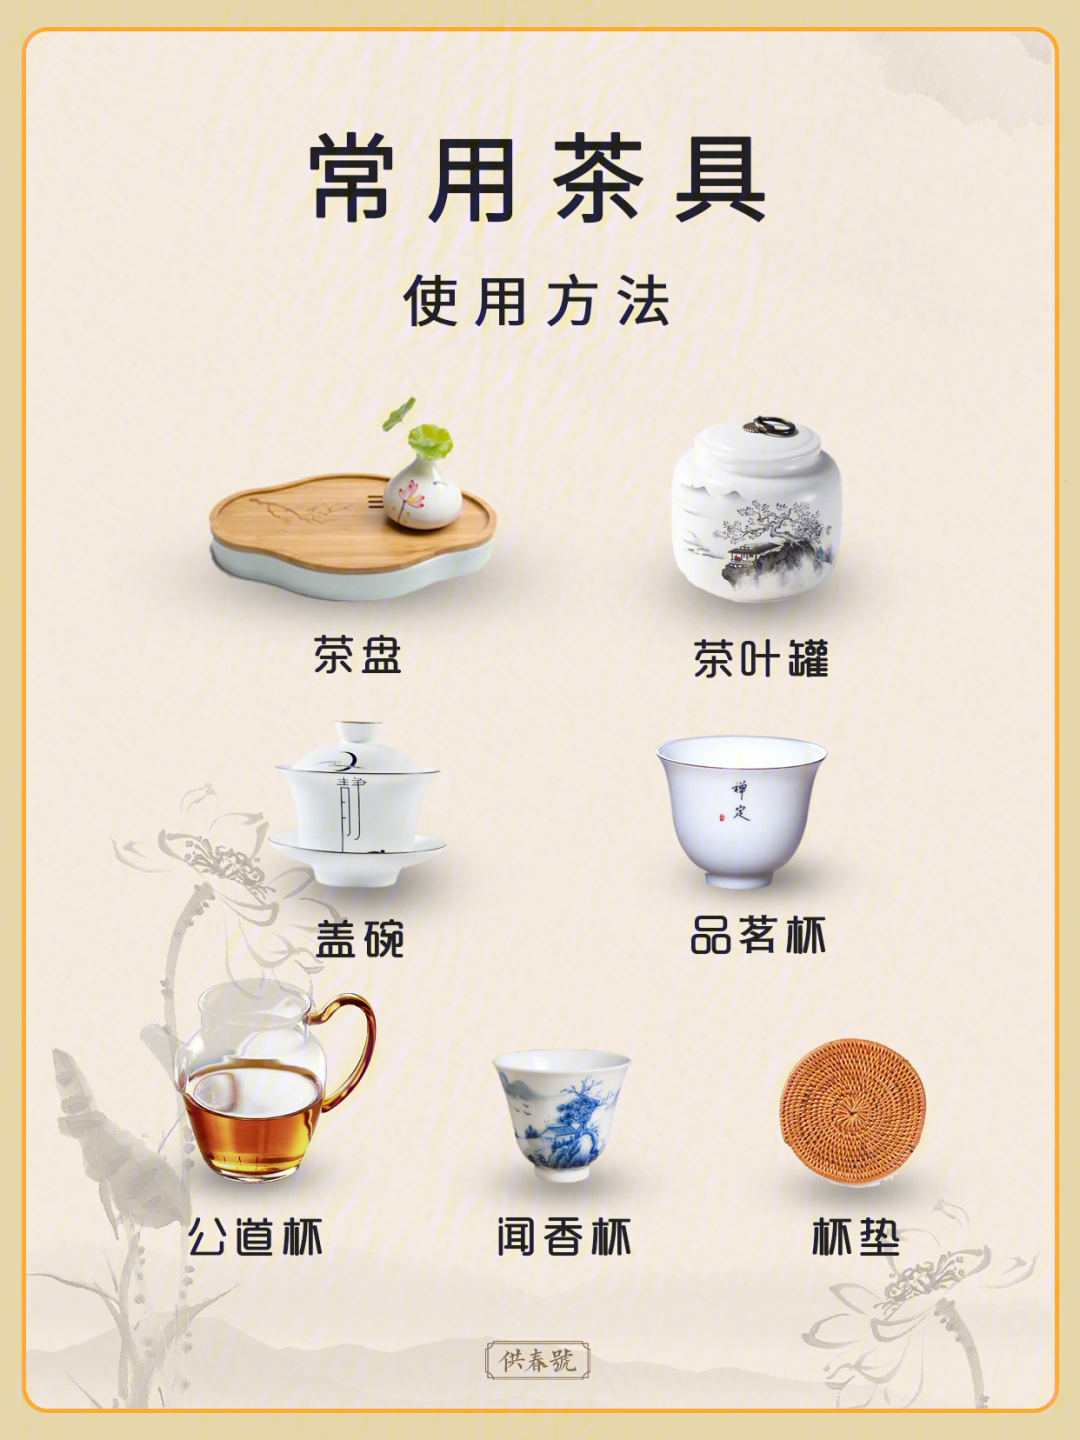 茶具六件套介绍图片